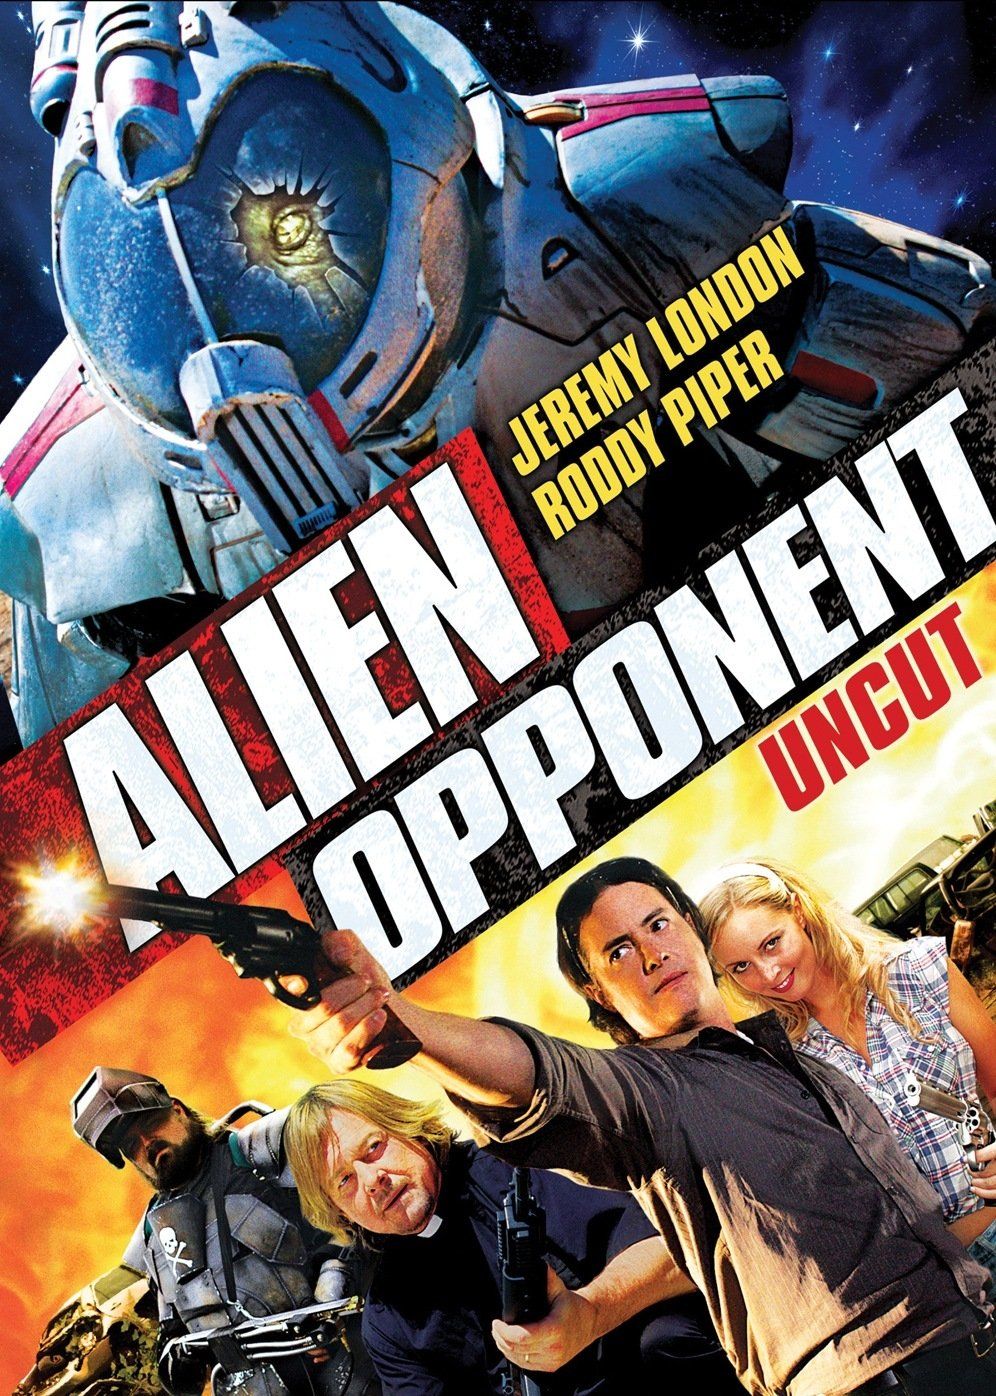 Alien Opponent (2010) Hindi Dubbed